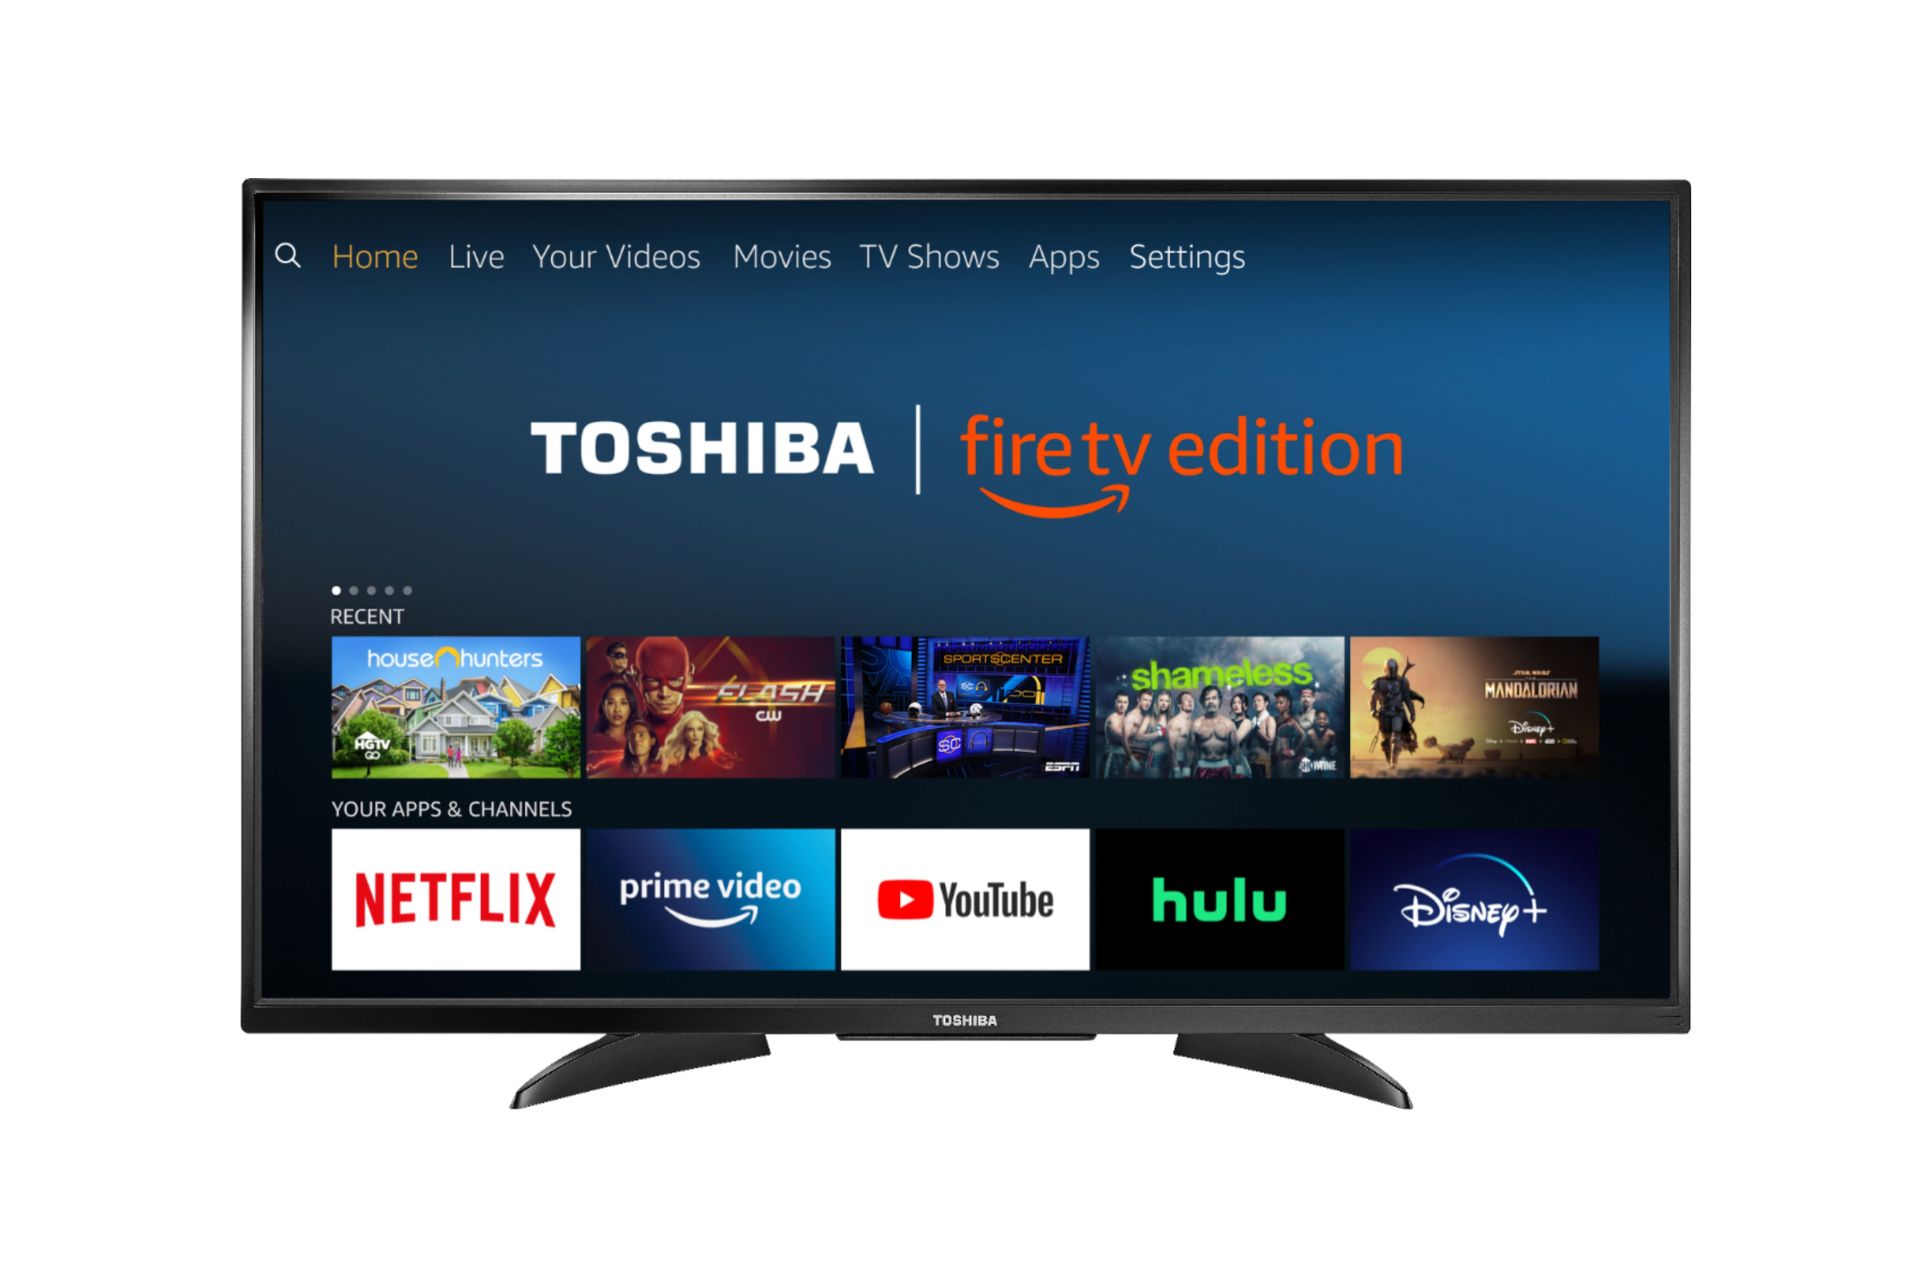 How To Setup A Toshiba 50LF621U19 50-Inch 4K Ultra HD Smart LED TV HDR – Fire TV Edition